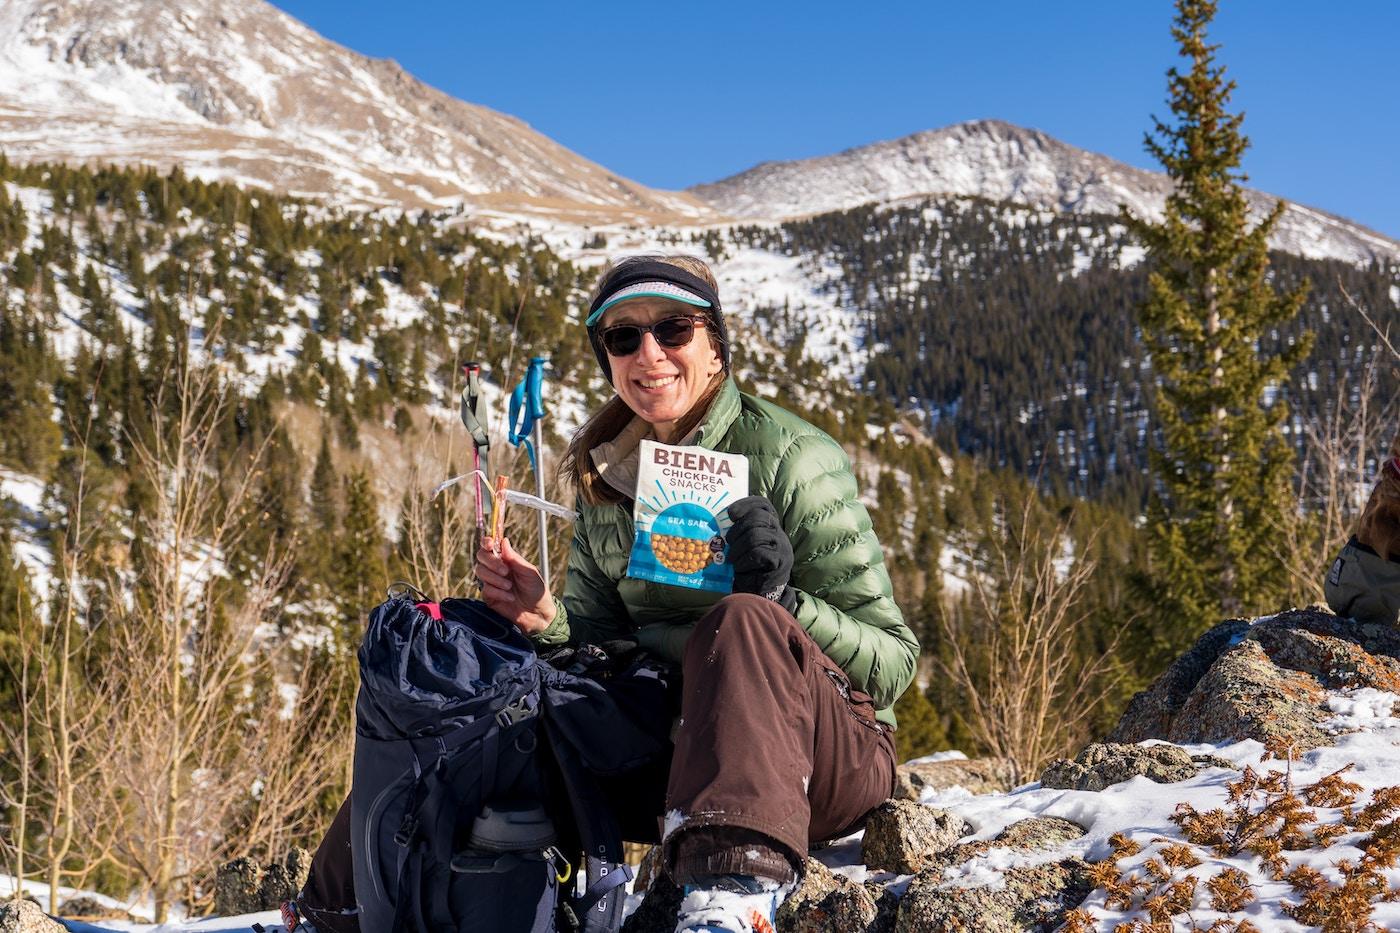 Alimentazione per le vostre avventure escursionistiche: Nutrienti essenziali e 30 idee per il pranzo facili da preparare